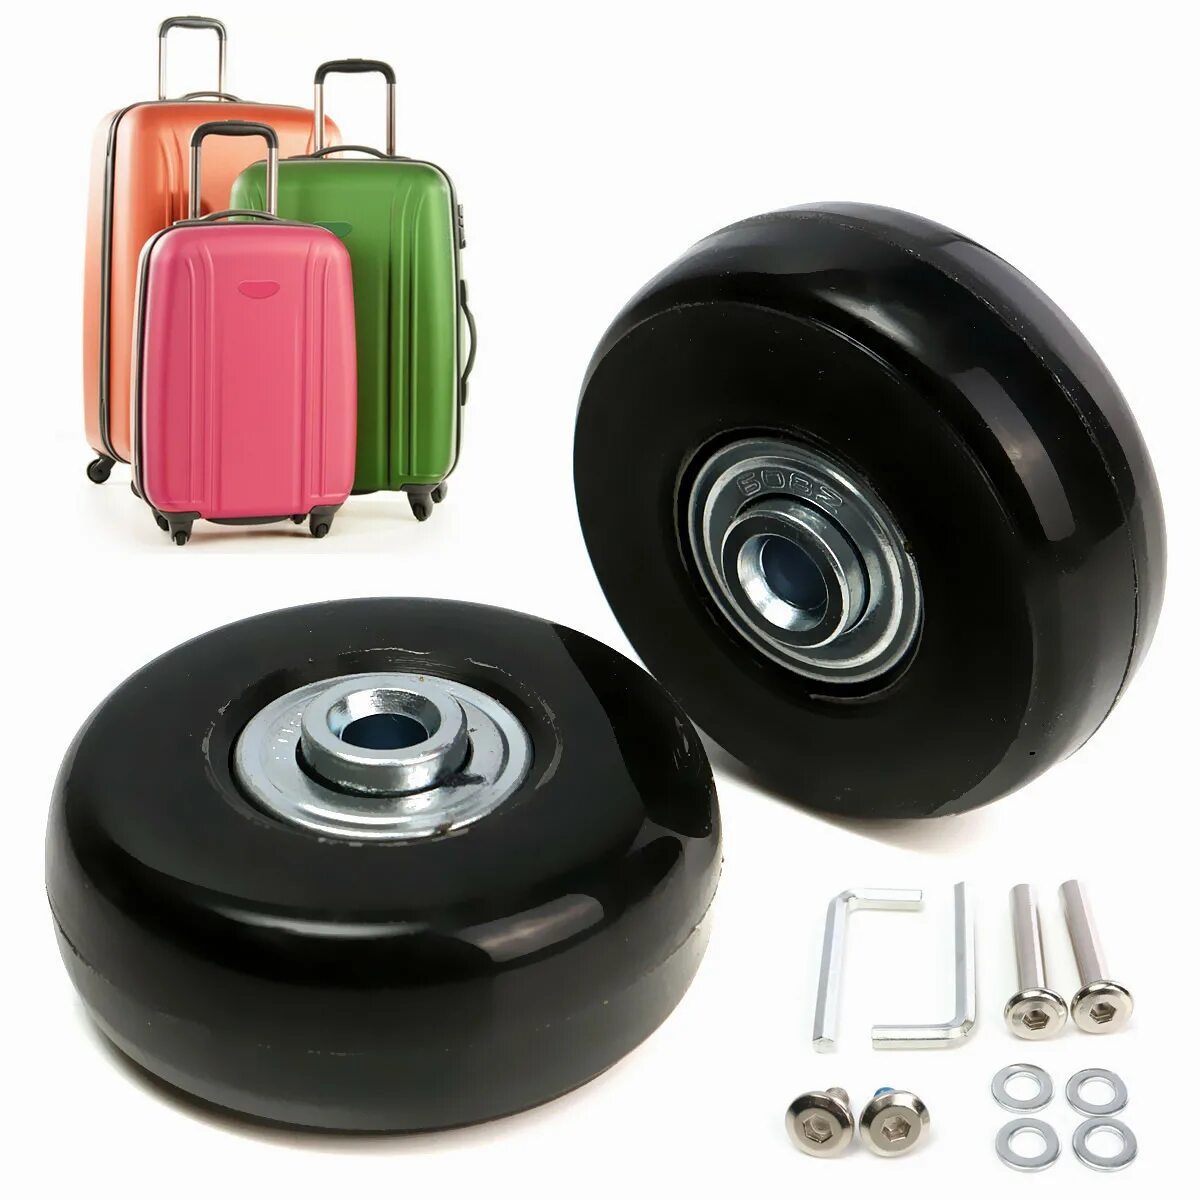 Колеса для чемодана LBJ-b124. Колеса с кронштейном для чемодана 13616636695. Артикул 18296688777 колеса для чемодана. Колесо для чемодана st201. Travel колесо